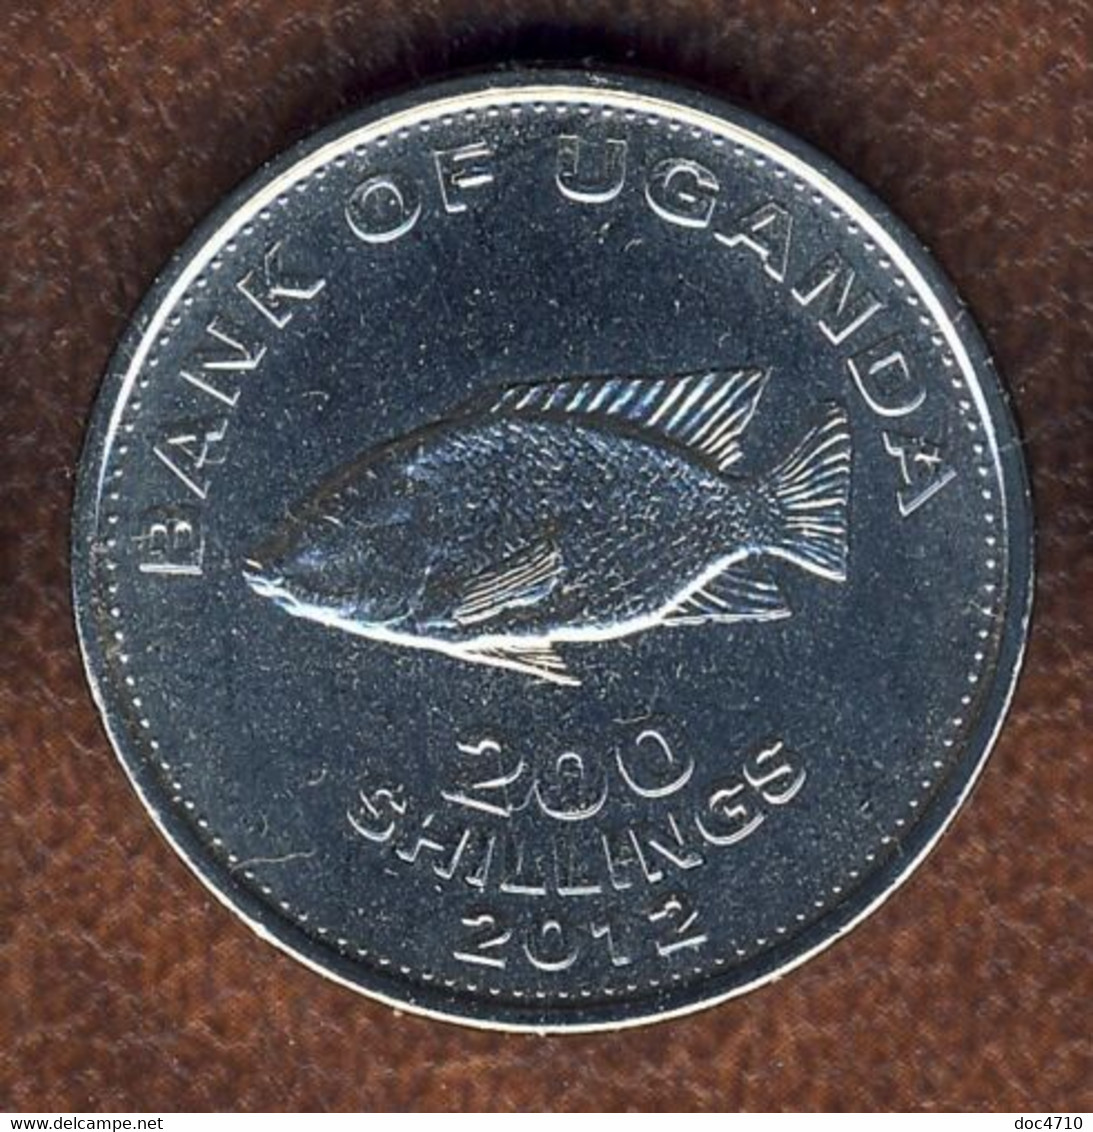 Uganda 200 Shillings 2012, Cichlid Fish, KM#68a, Unc - Uganda